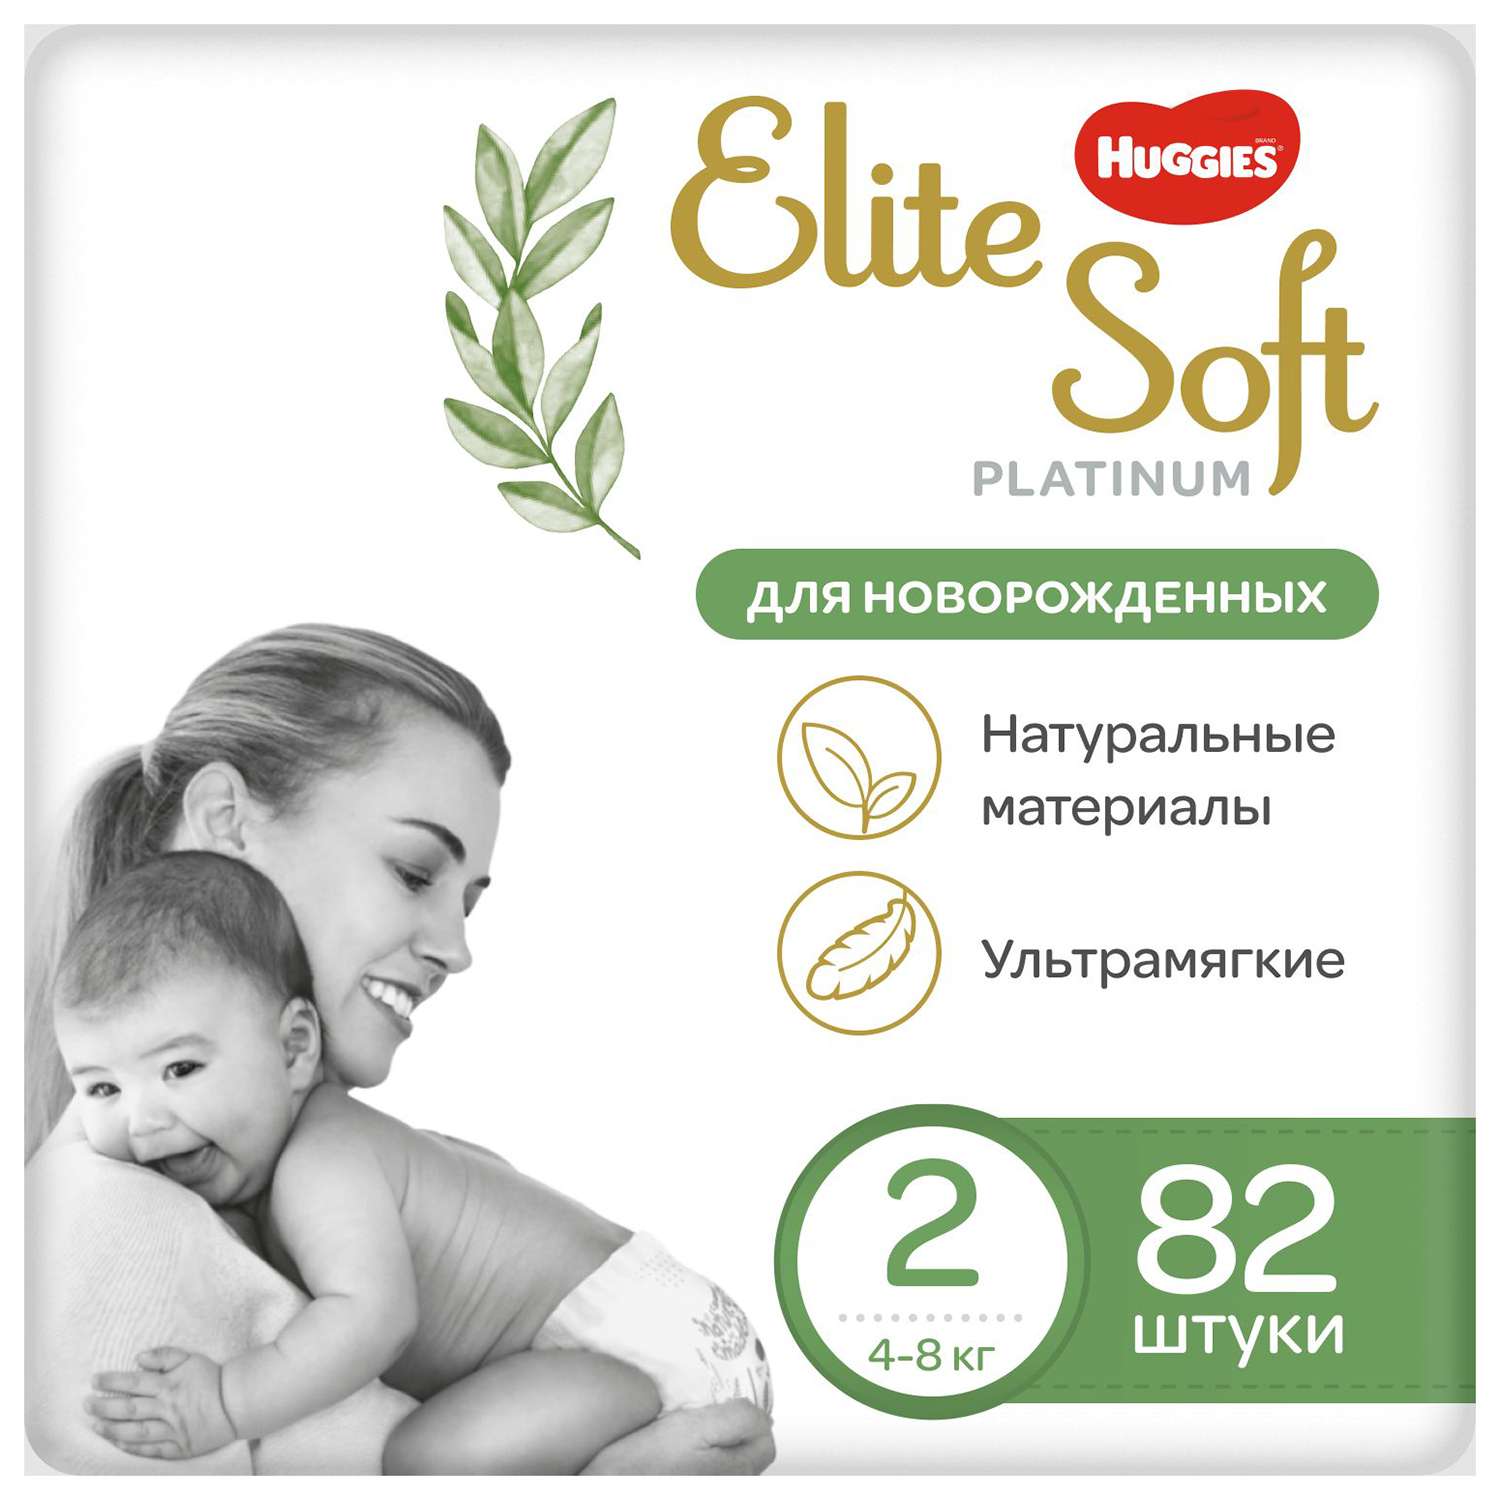 Подгузники Huggies Elite Soft Platinum для новорожденных 2 4-8кг 82шт - фото 1